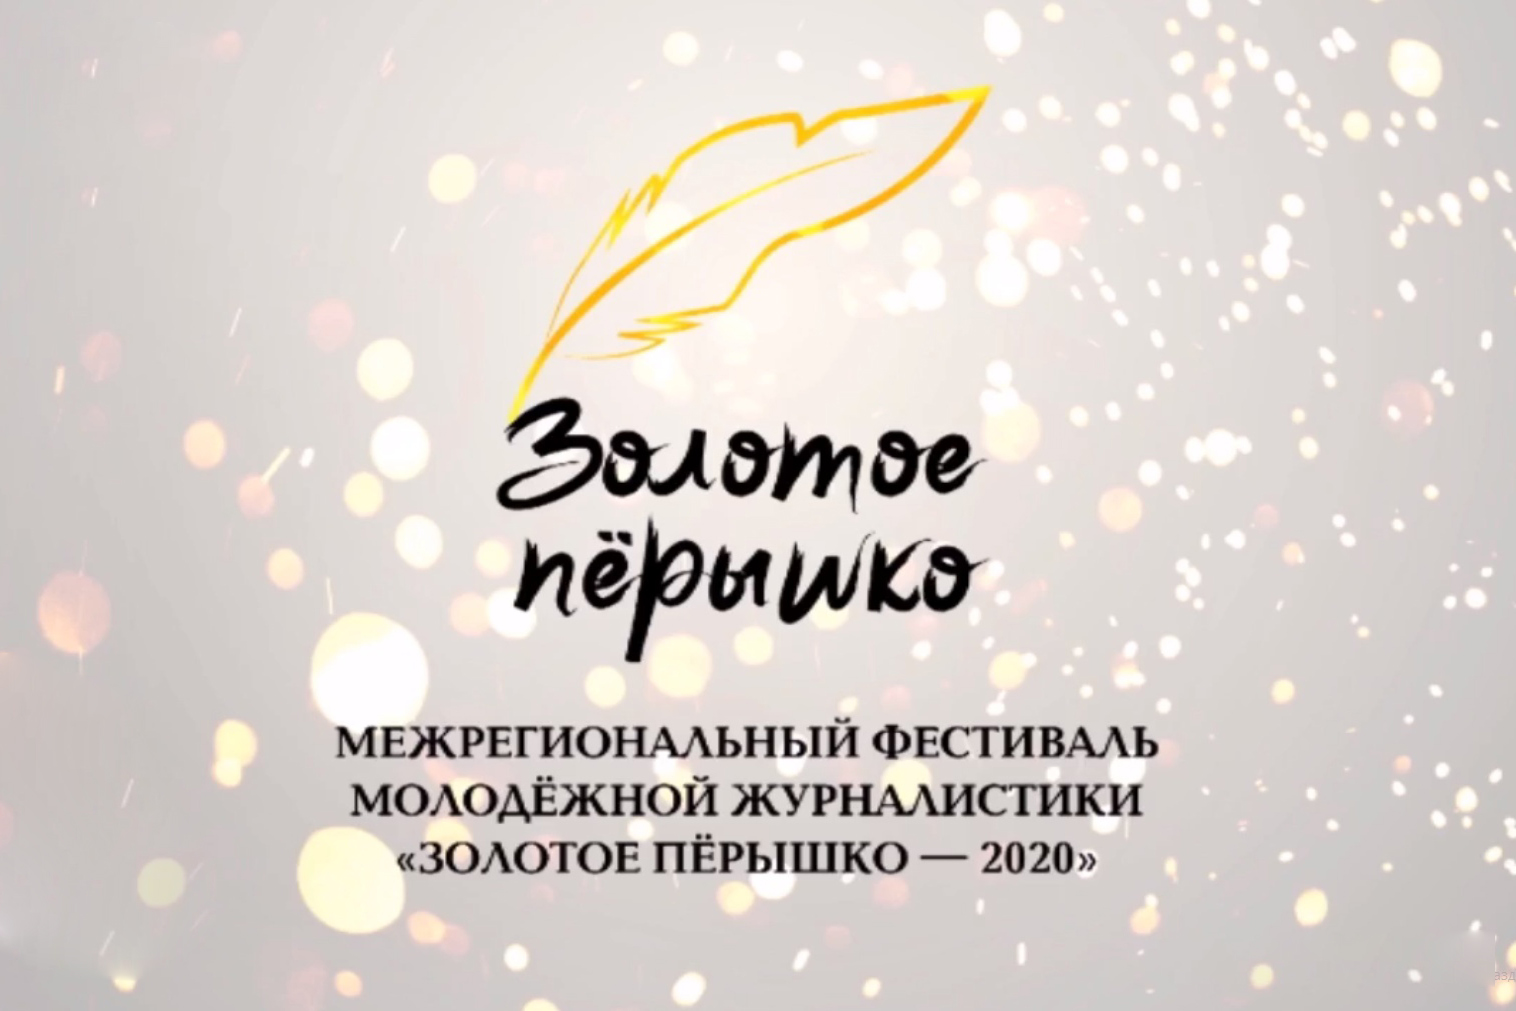 Фестиваль «Золотое перышко» объединил более 100 молодых журналистов со всей России